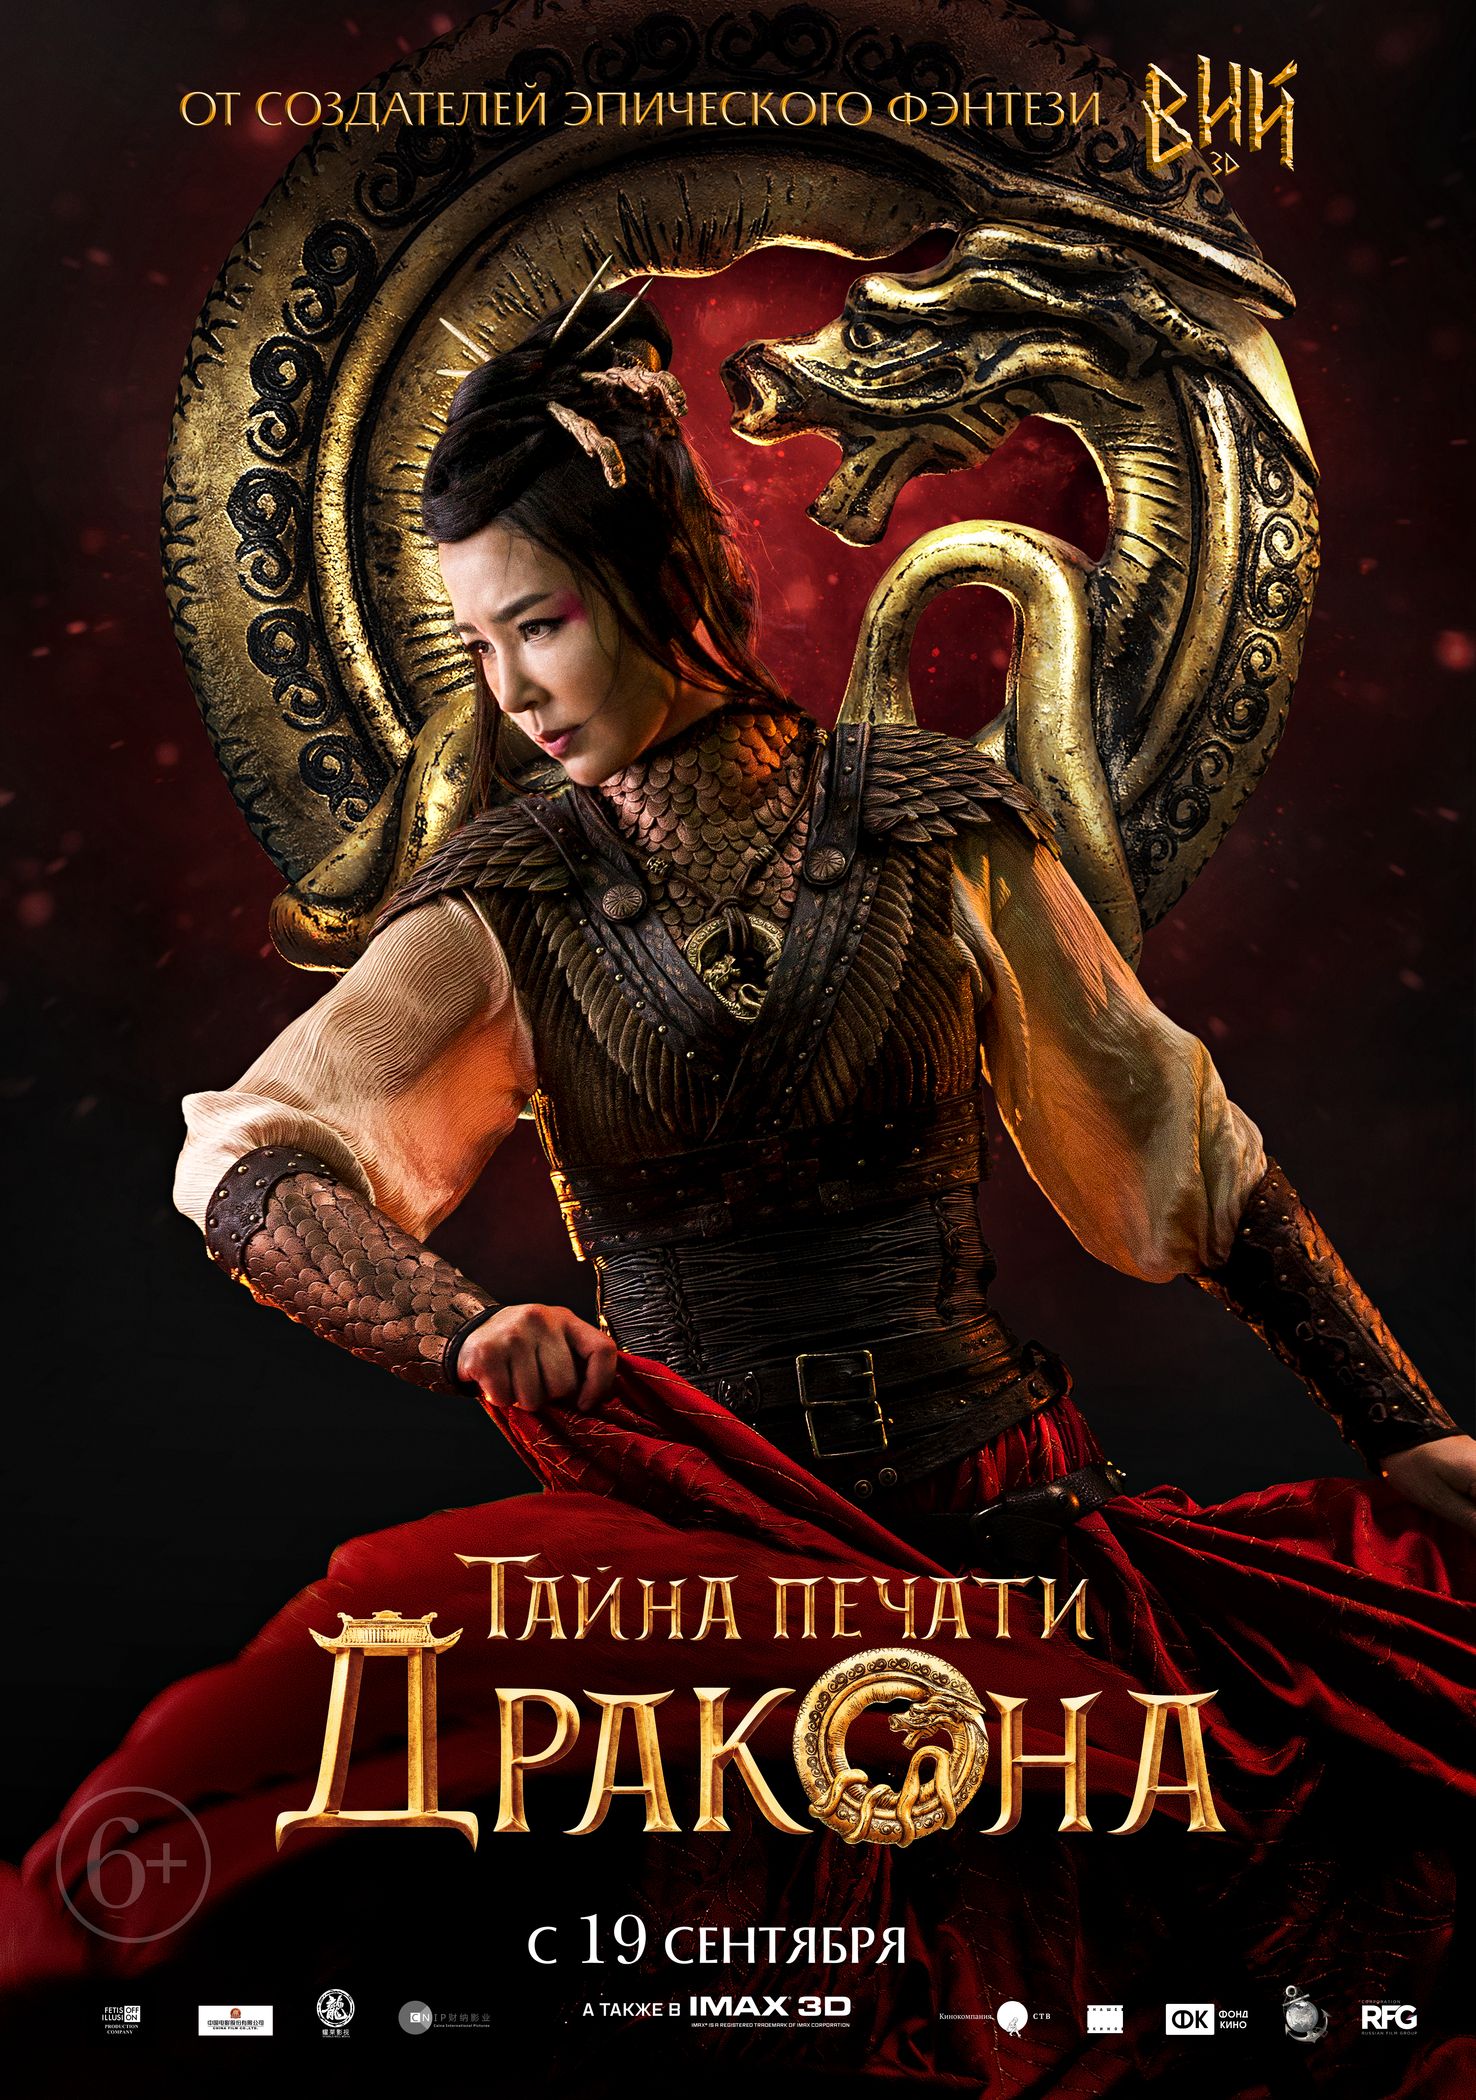 Тайна Печати дракона, постер № 15